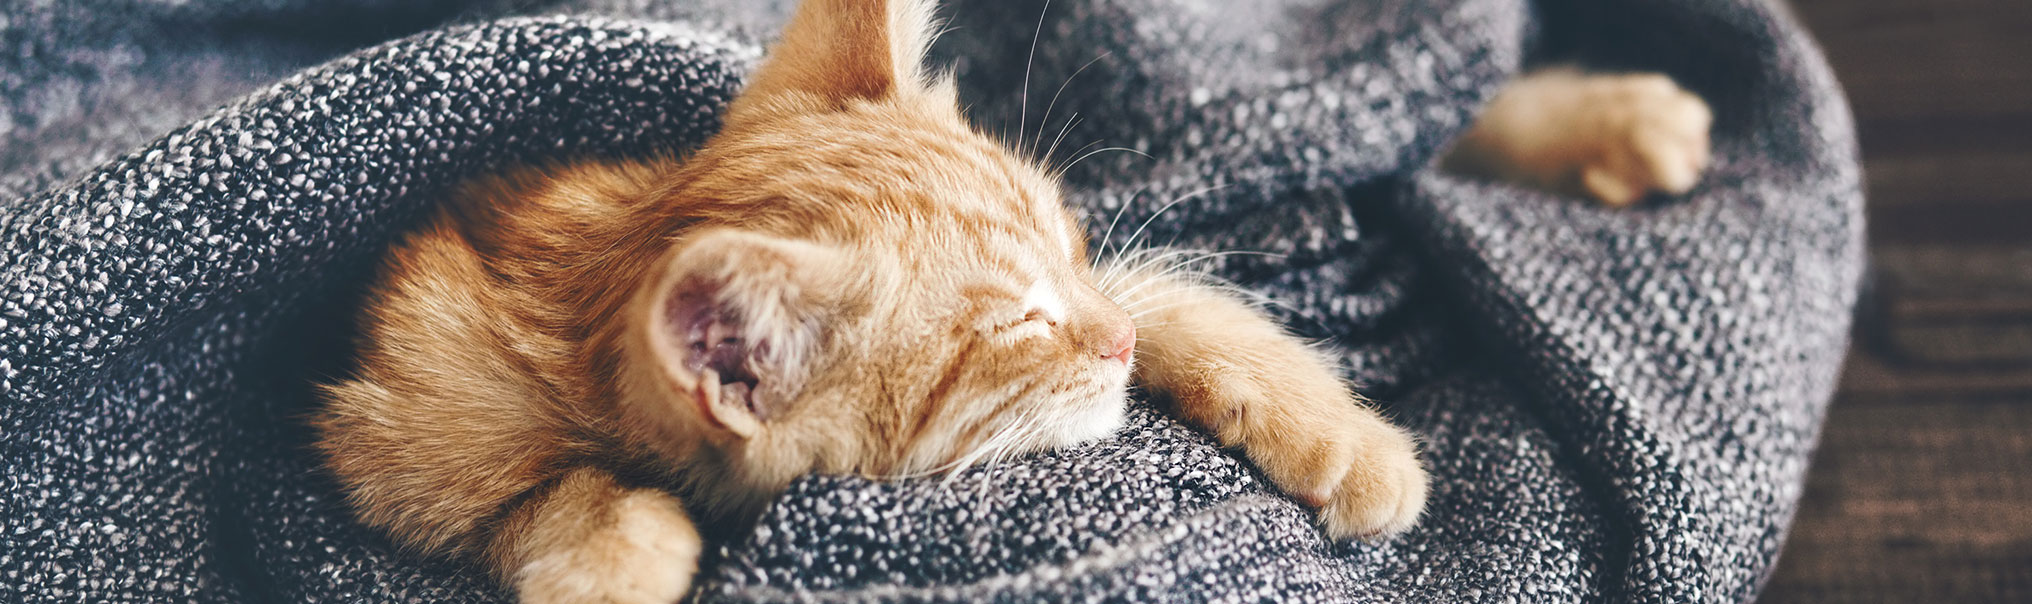 Sleeping kitten wrapped in a blanket